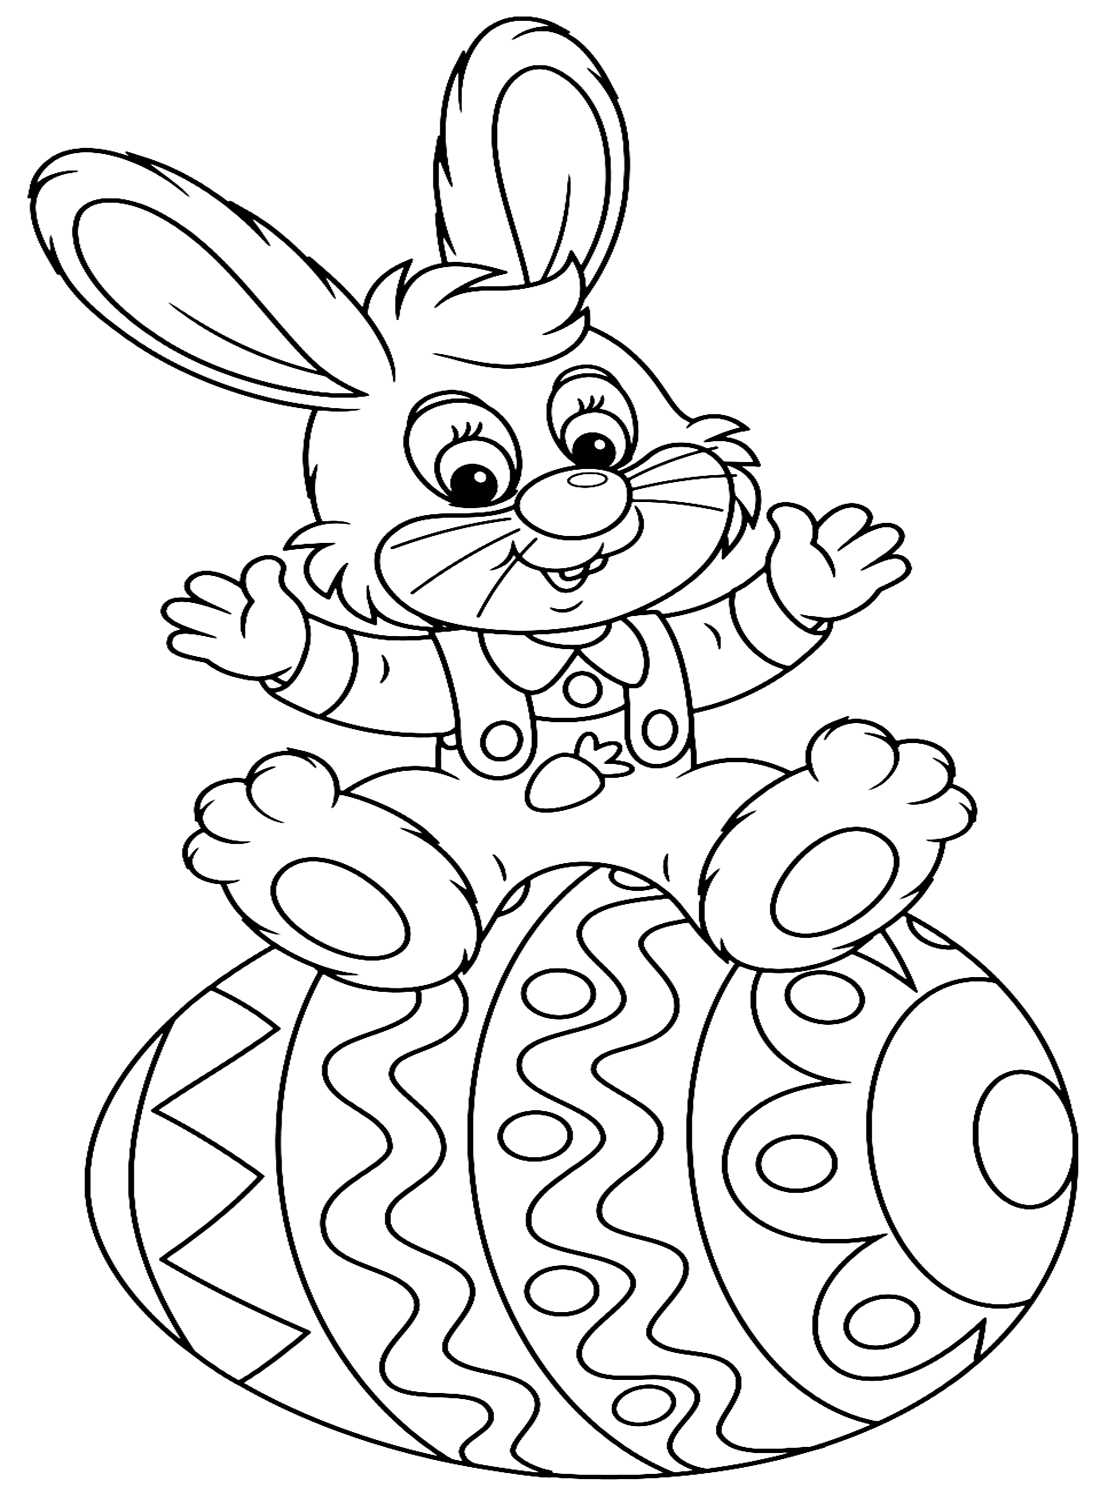 快乐的小兔子坐在兔子的复活节彩蛋上